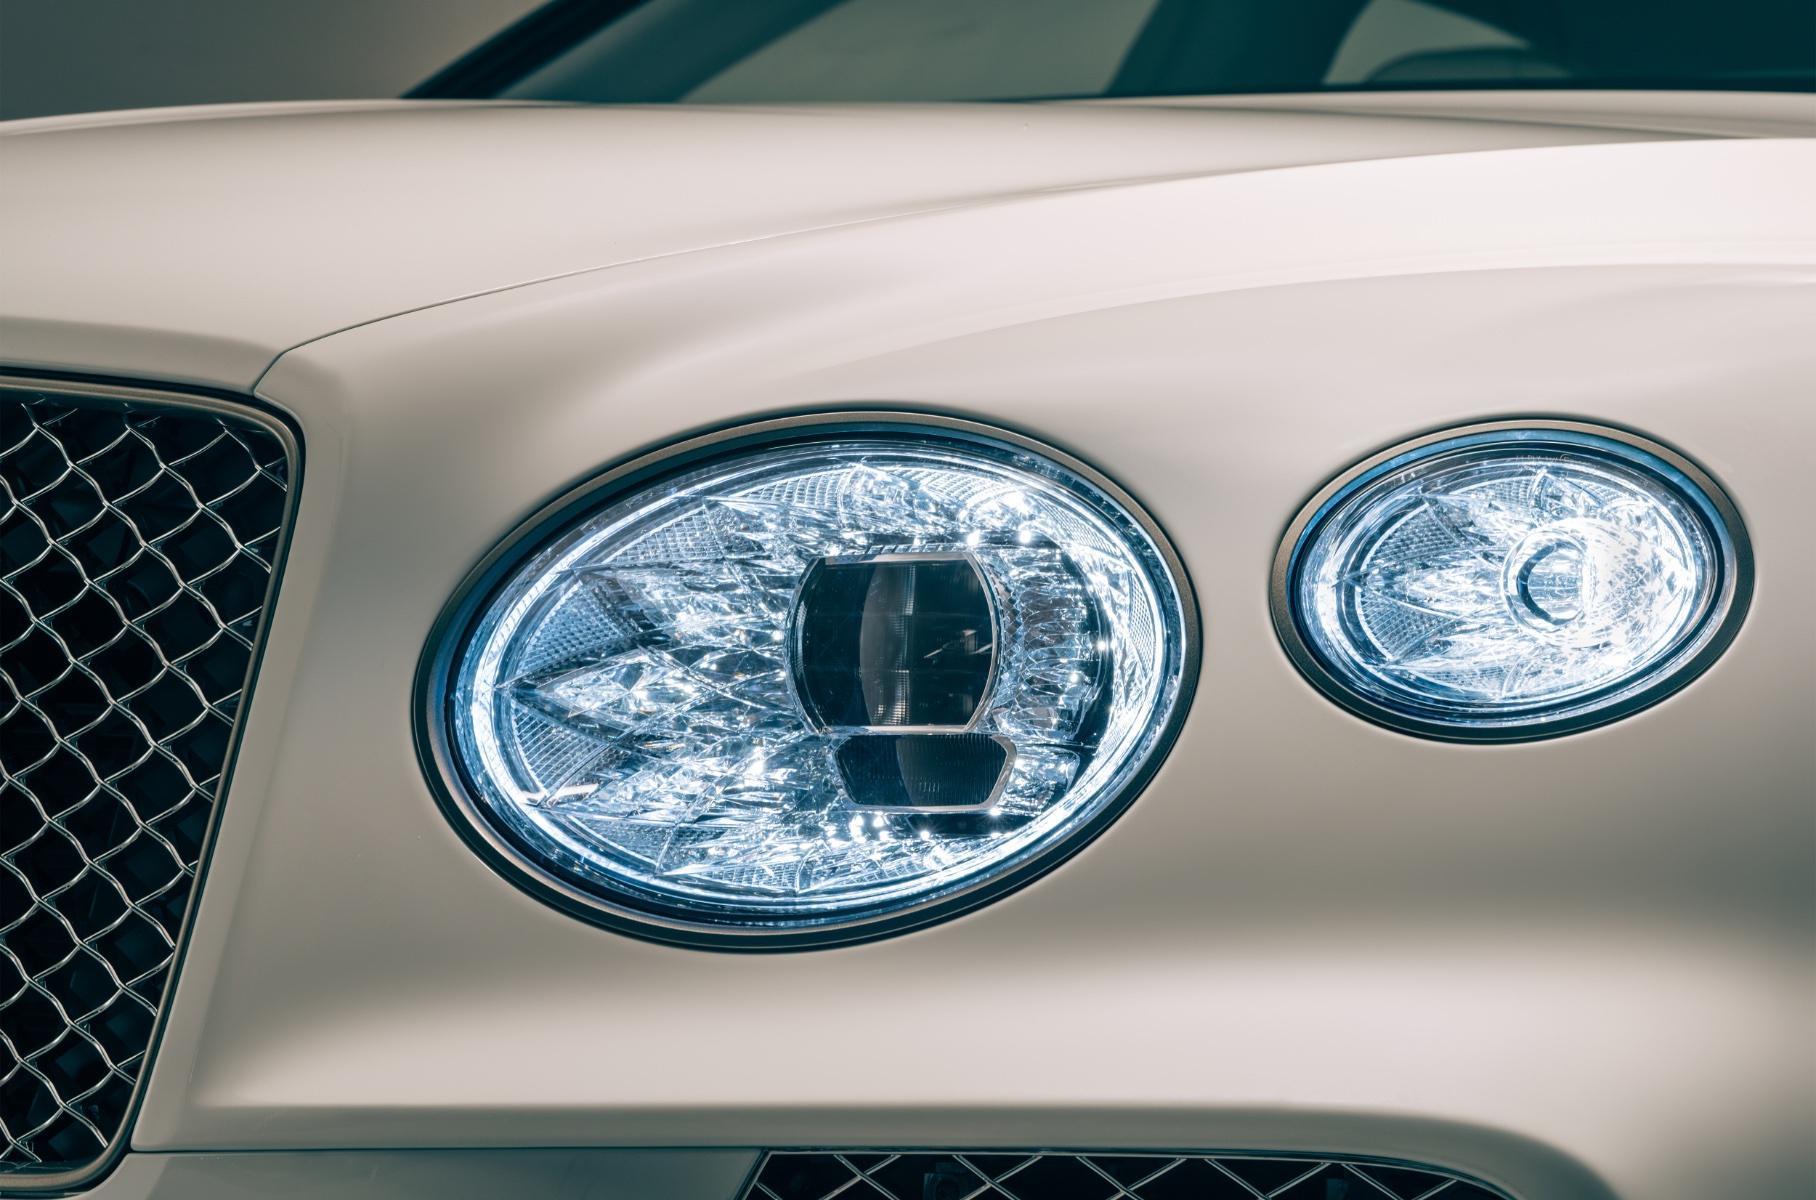 Представлений особливий Bentley Bentayga з екологічним оздобленням салону